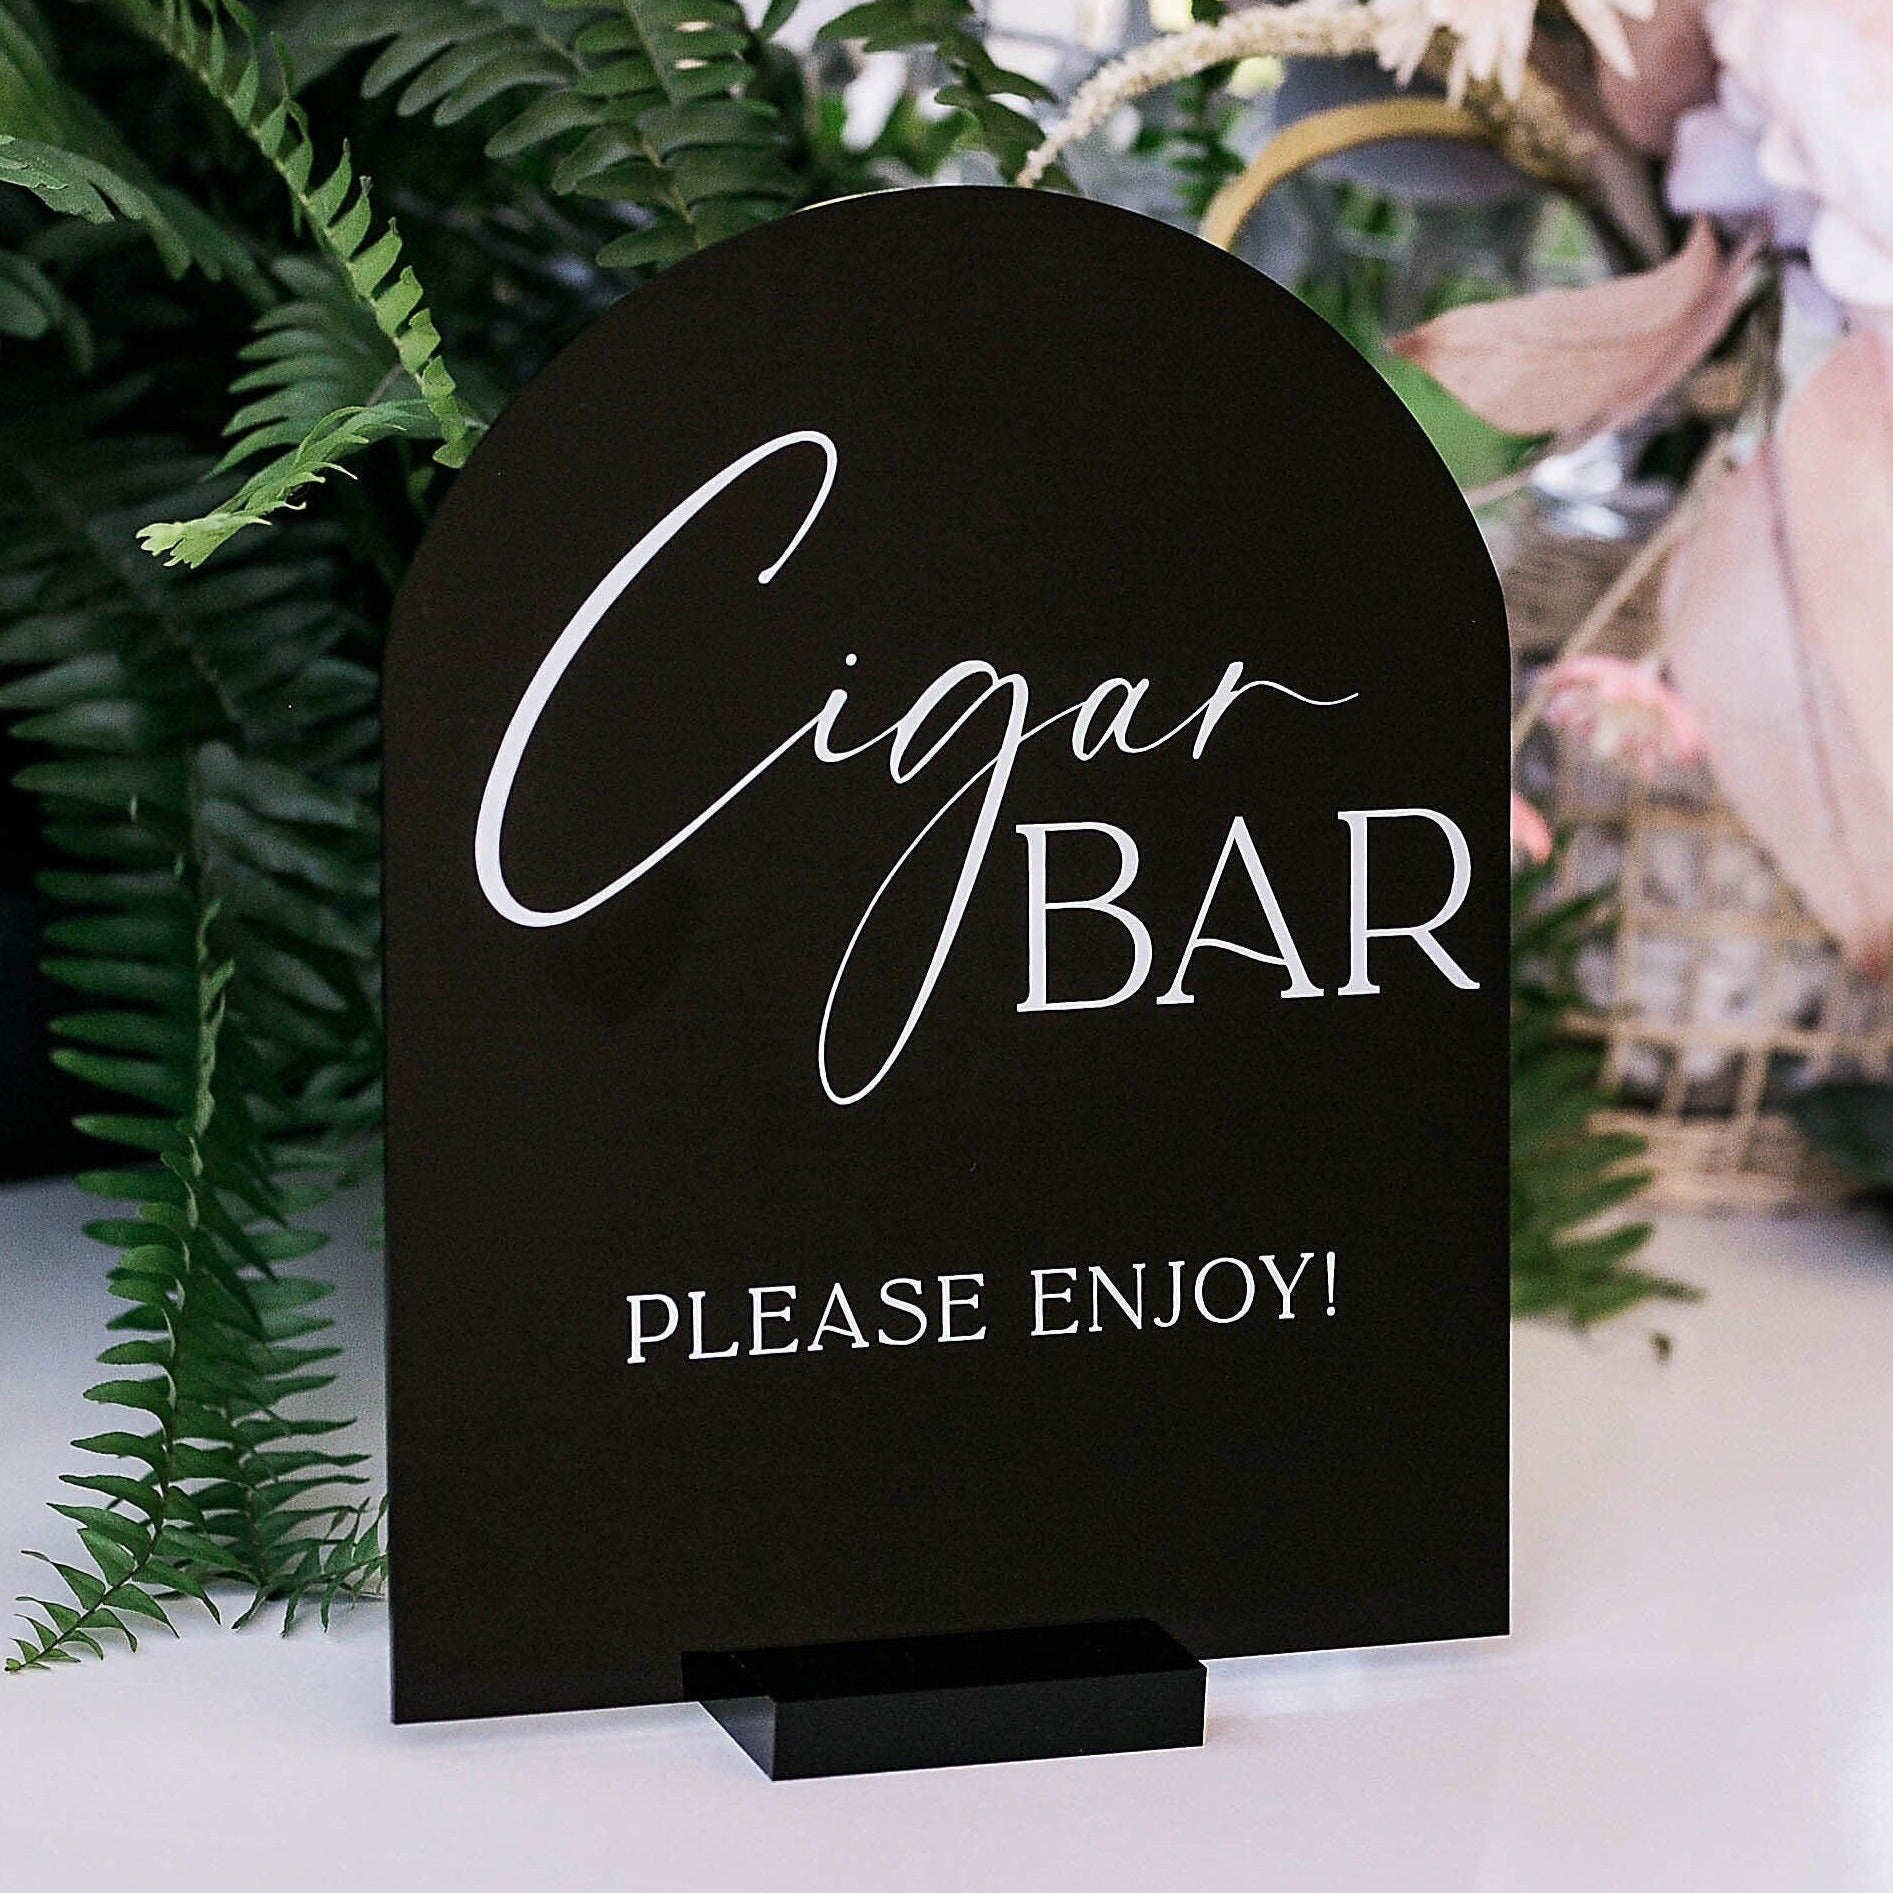 ARCH Cigar Bar Please Enjoy! M9-AS1